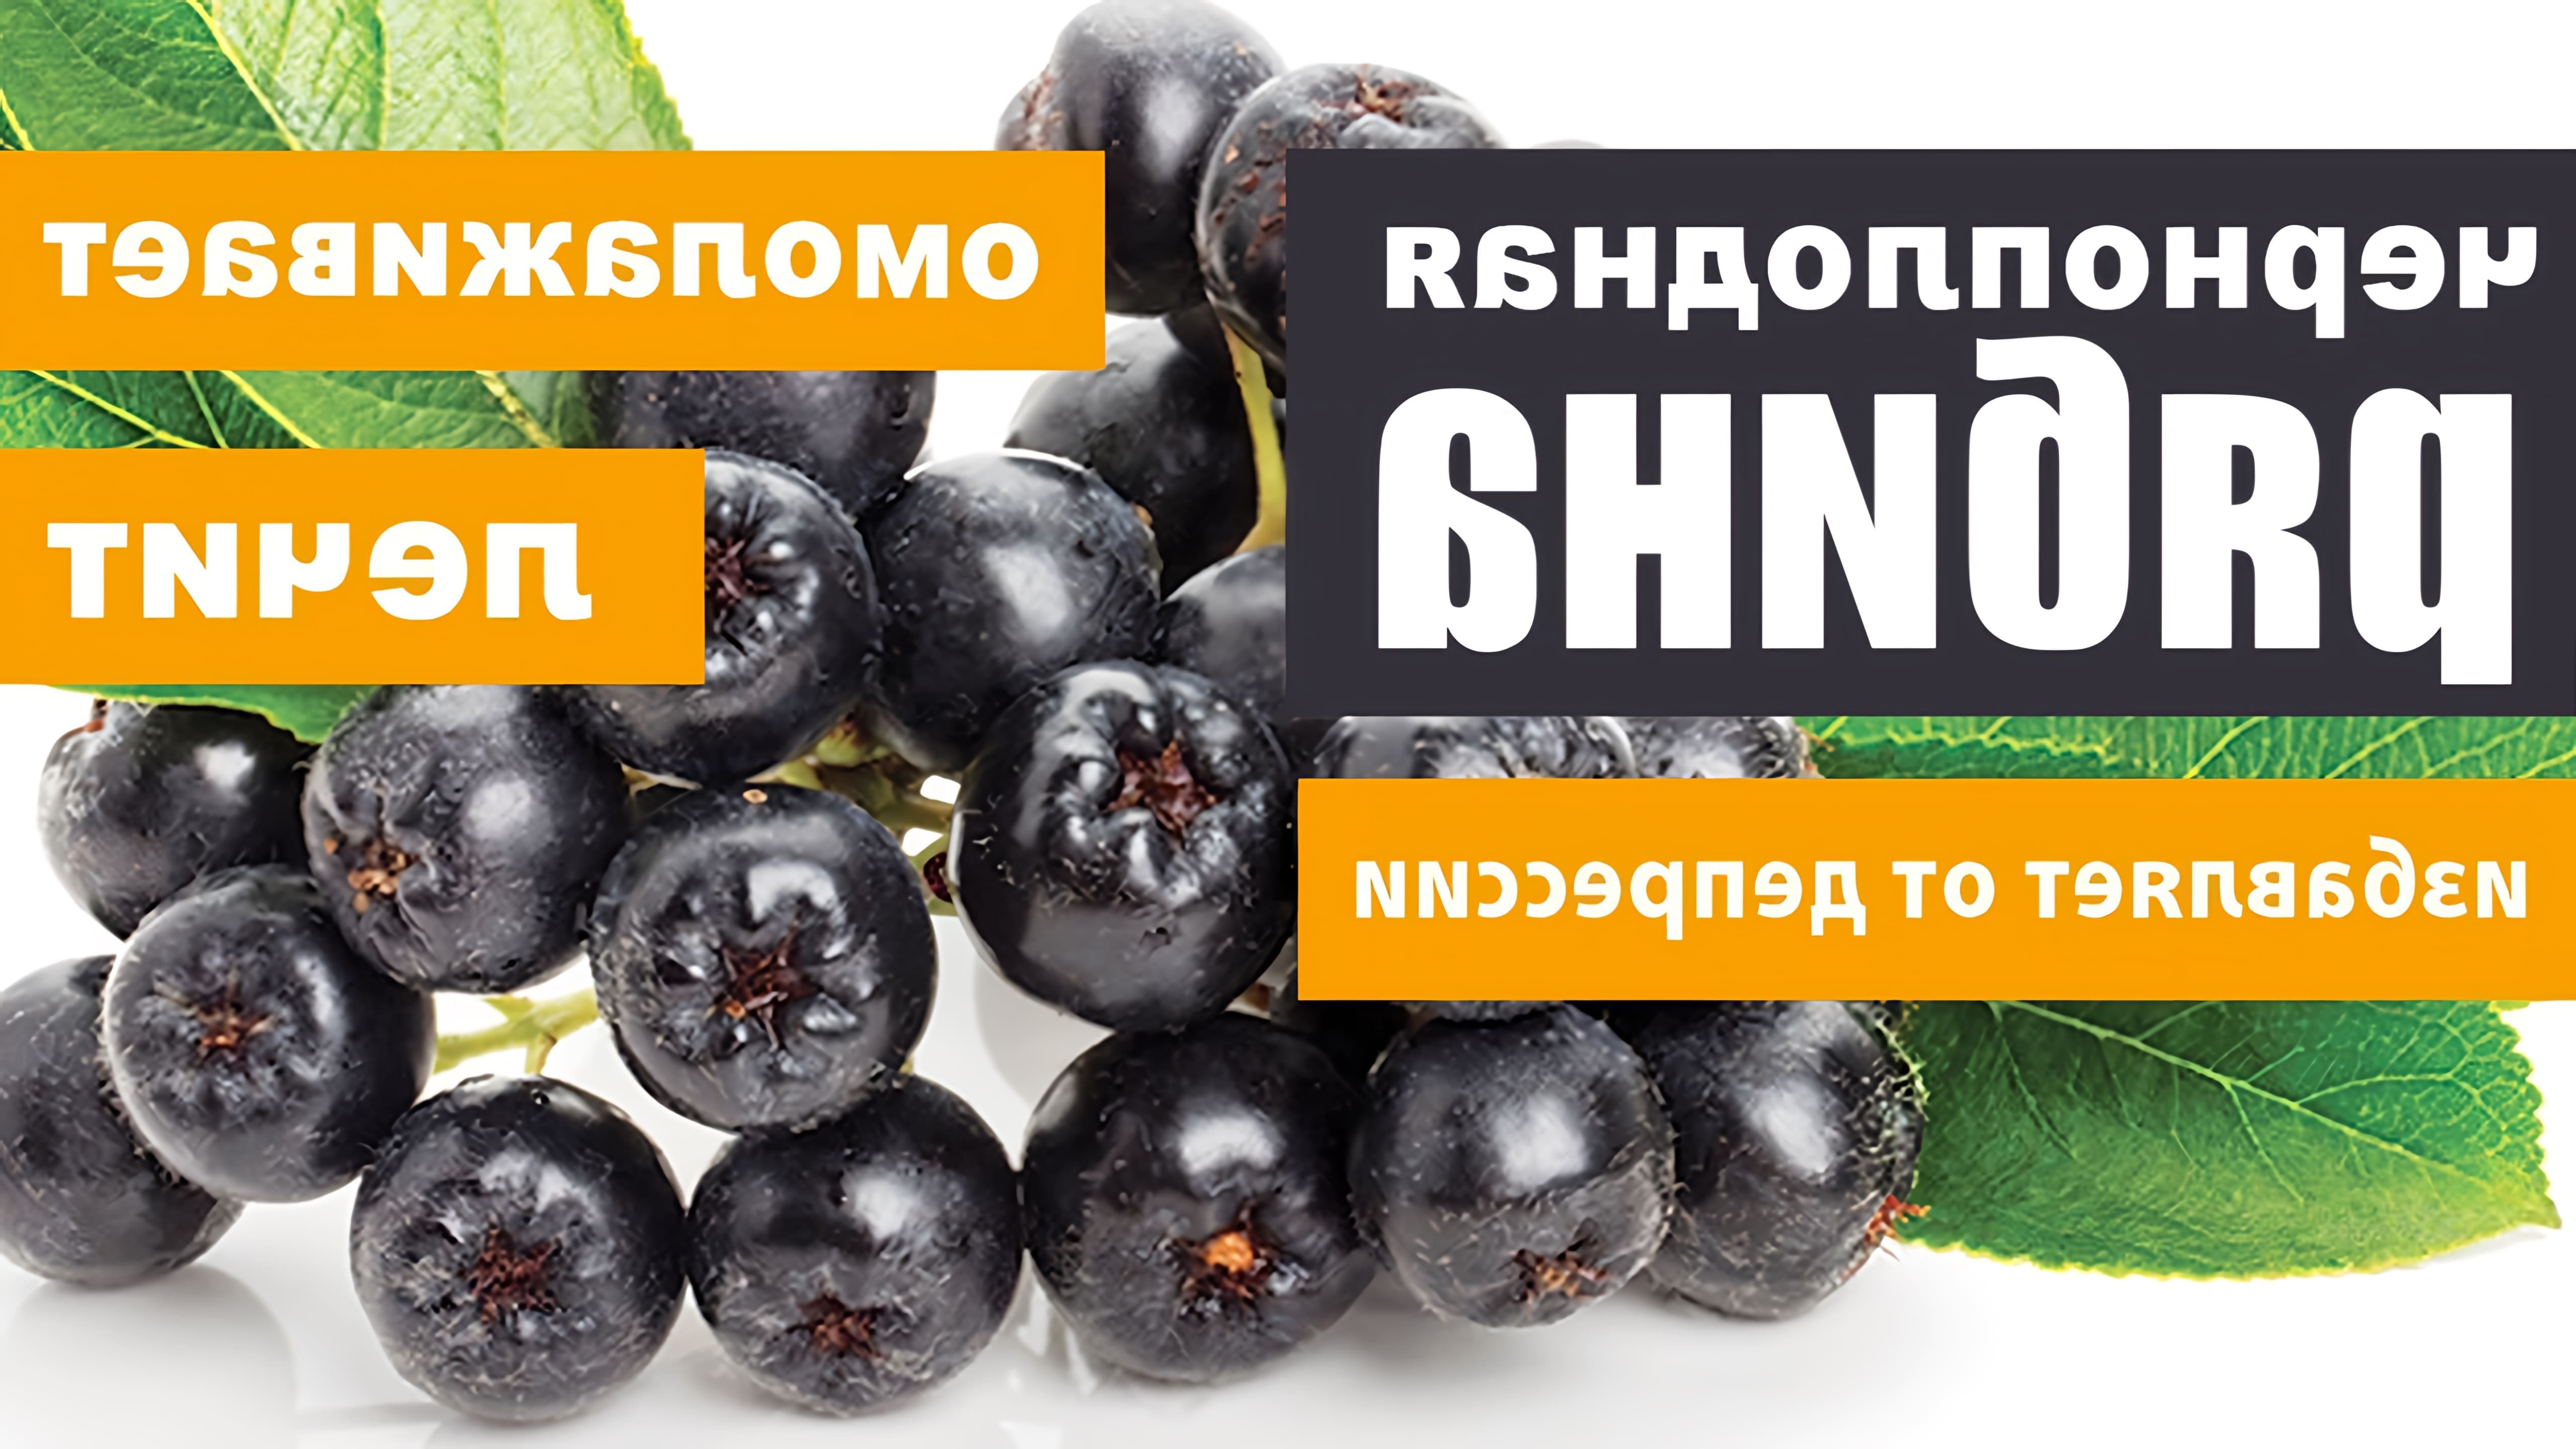 Черноплодная рябина, также известная как арония, является высокоценным продуктом питания, богатым витаминами, микроэлементами и пектинами